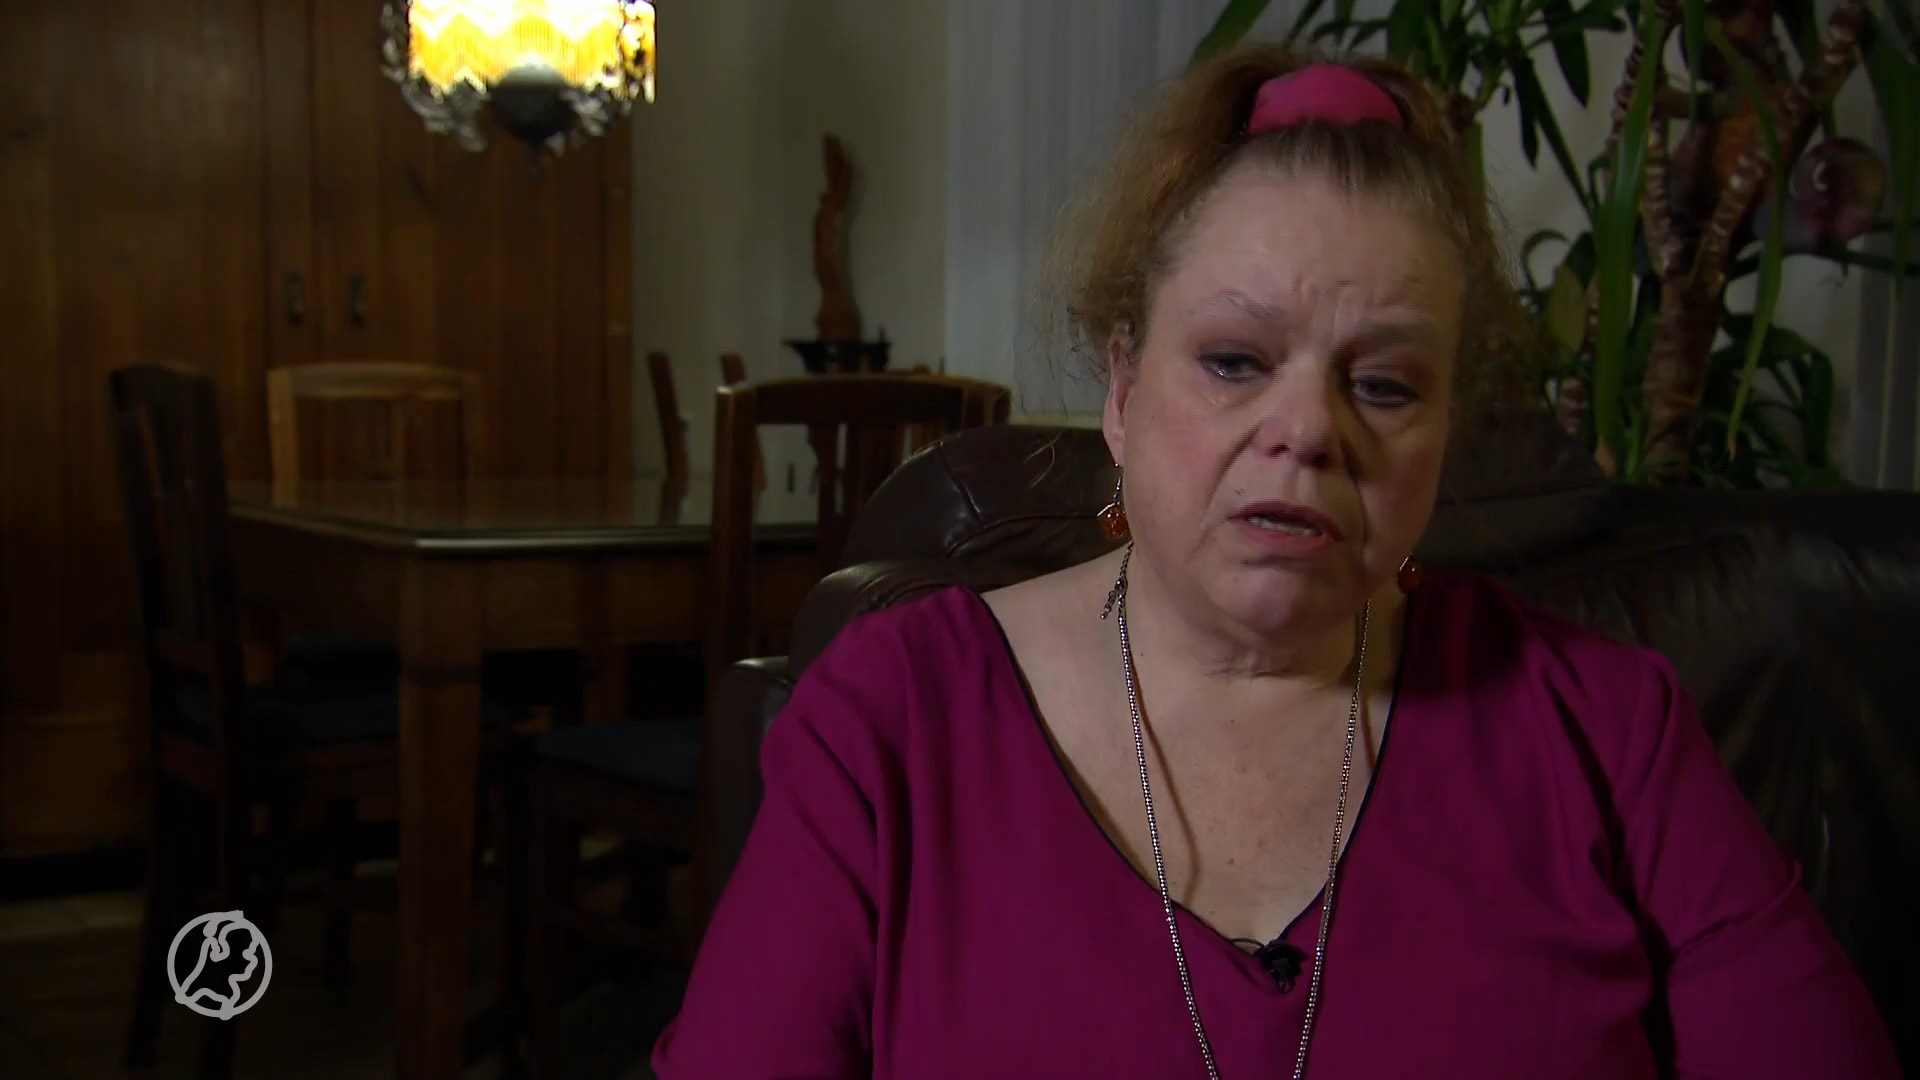 Enorme opluchting bij moeder van overleden Janneke: 'Ze zei tegen mij: mama, ze vergiftigen me'